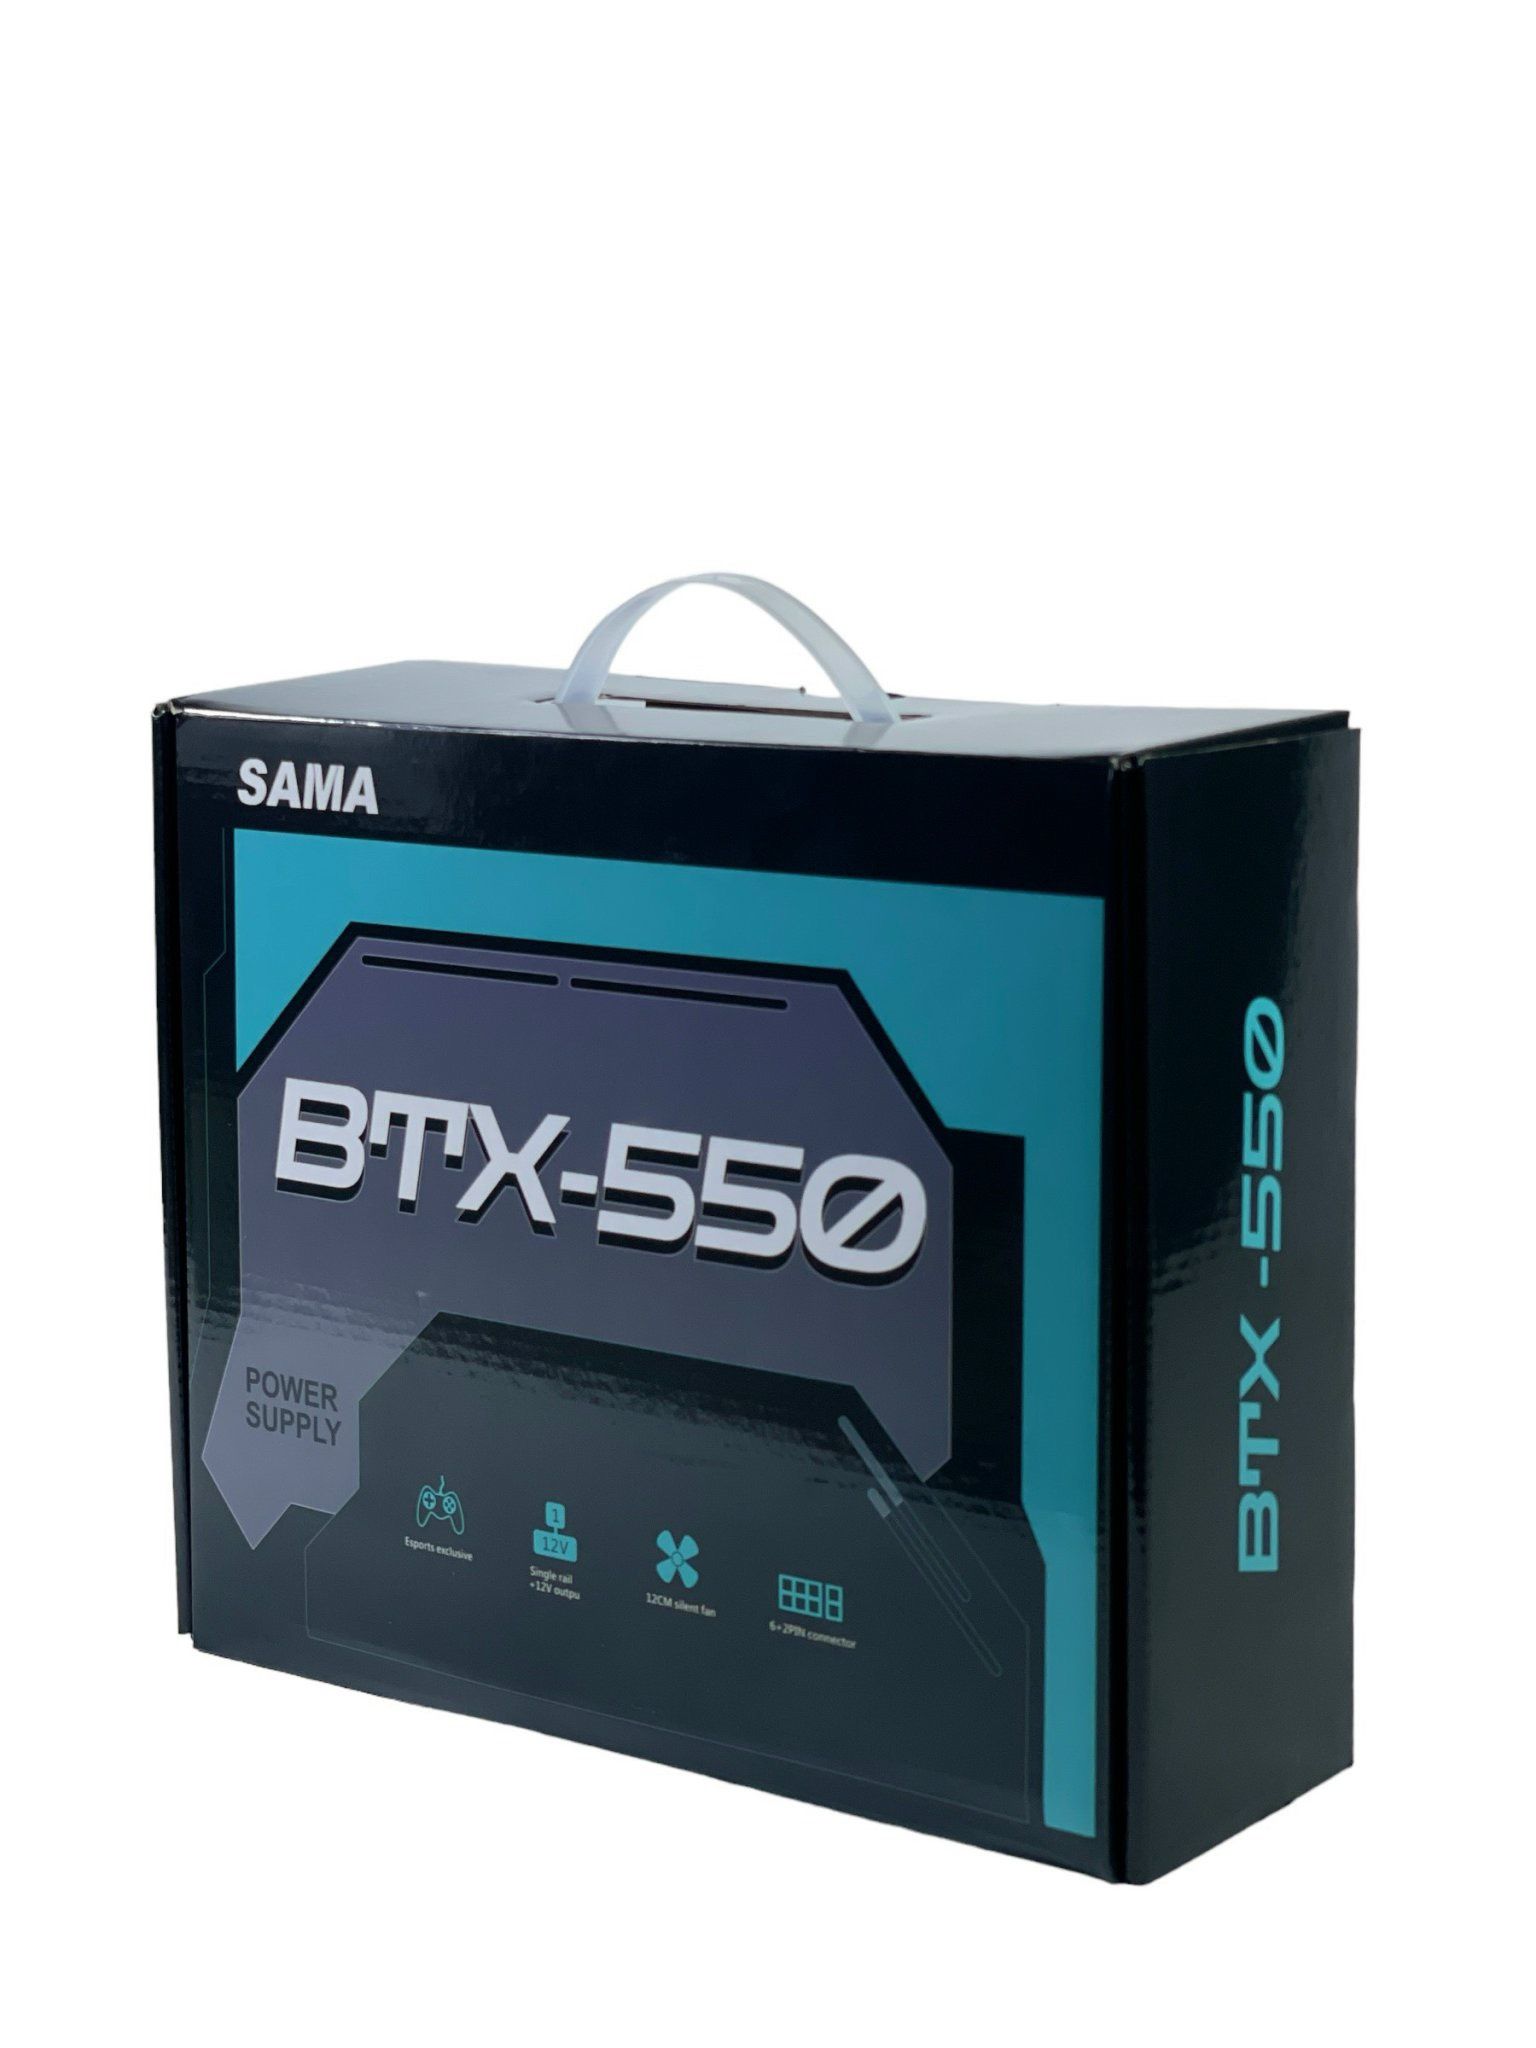  Nguồn máy tính Sama BTX-550 550w Bzone 